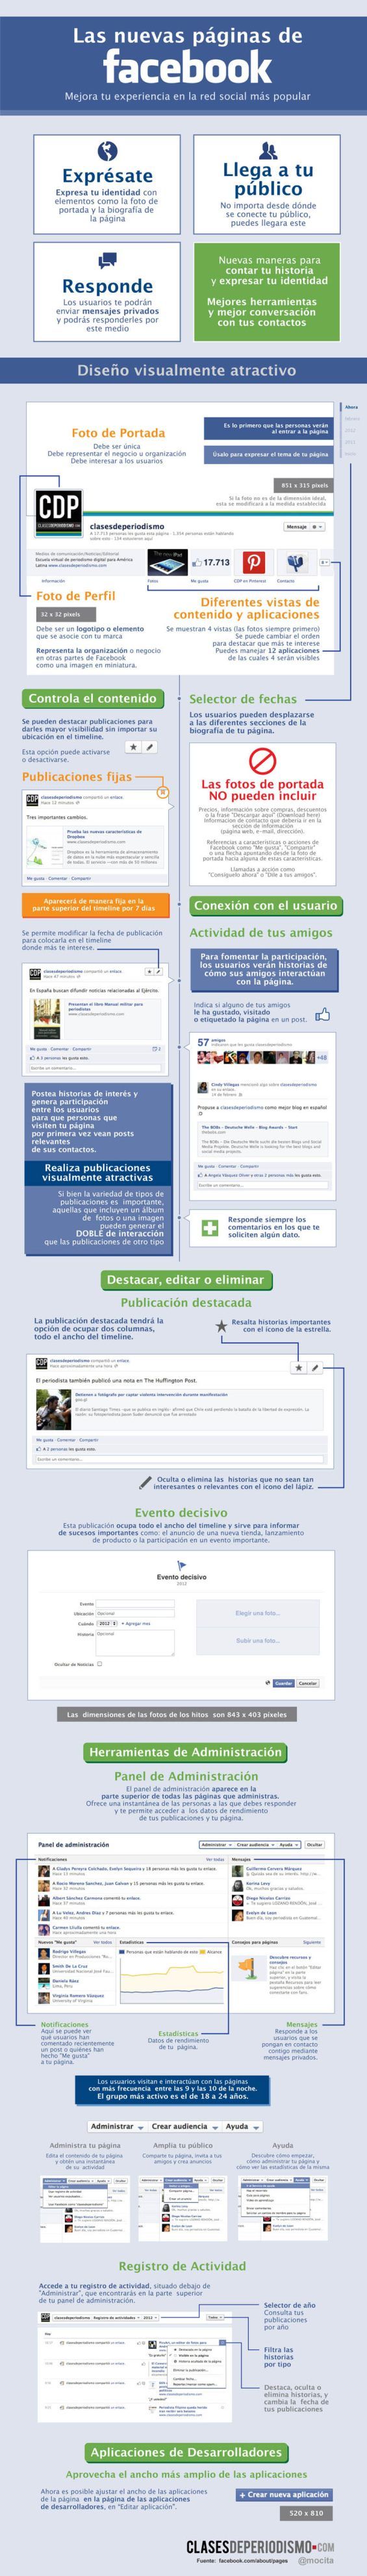 Advertising-Infographics-Las-nuevas-paginas-de-FaceBook-infografia-infographic Advertising Infographics : Las nuevas páginas de FaceBook #infografia #infographic #socialmedia